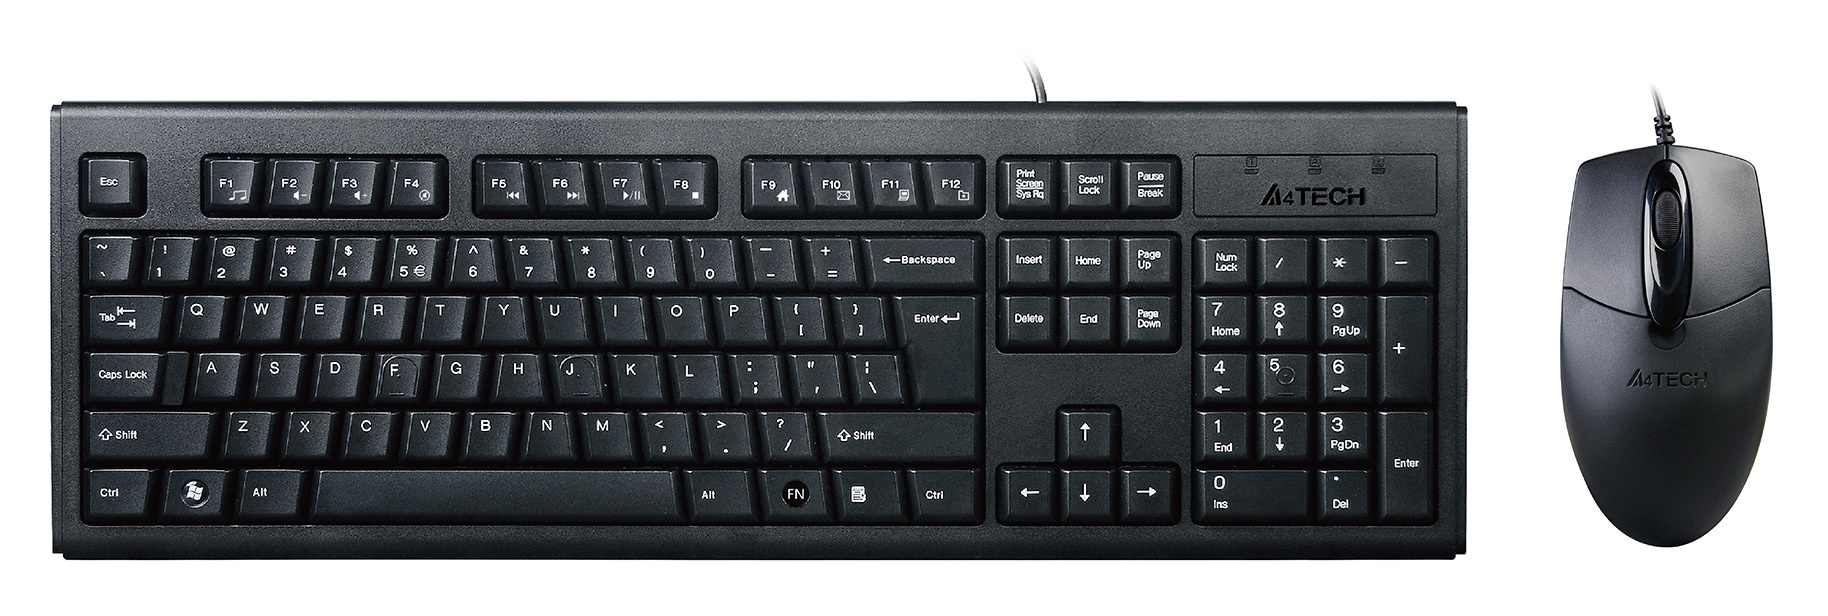 Клавиатура + мышь A4 KRS-8372 клав:черный мышь:черный USB